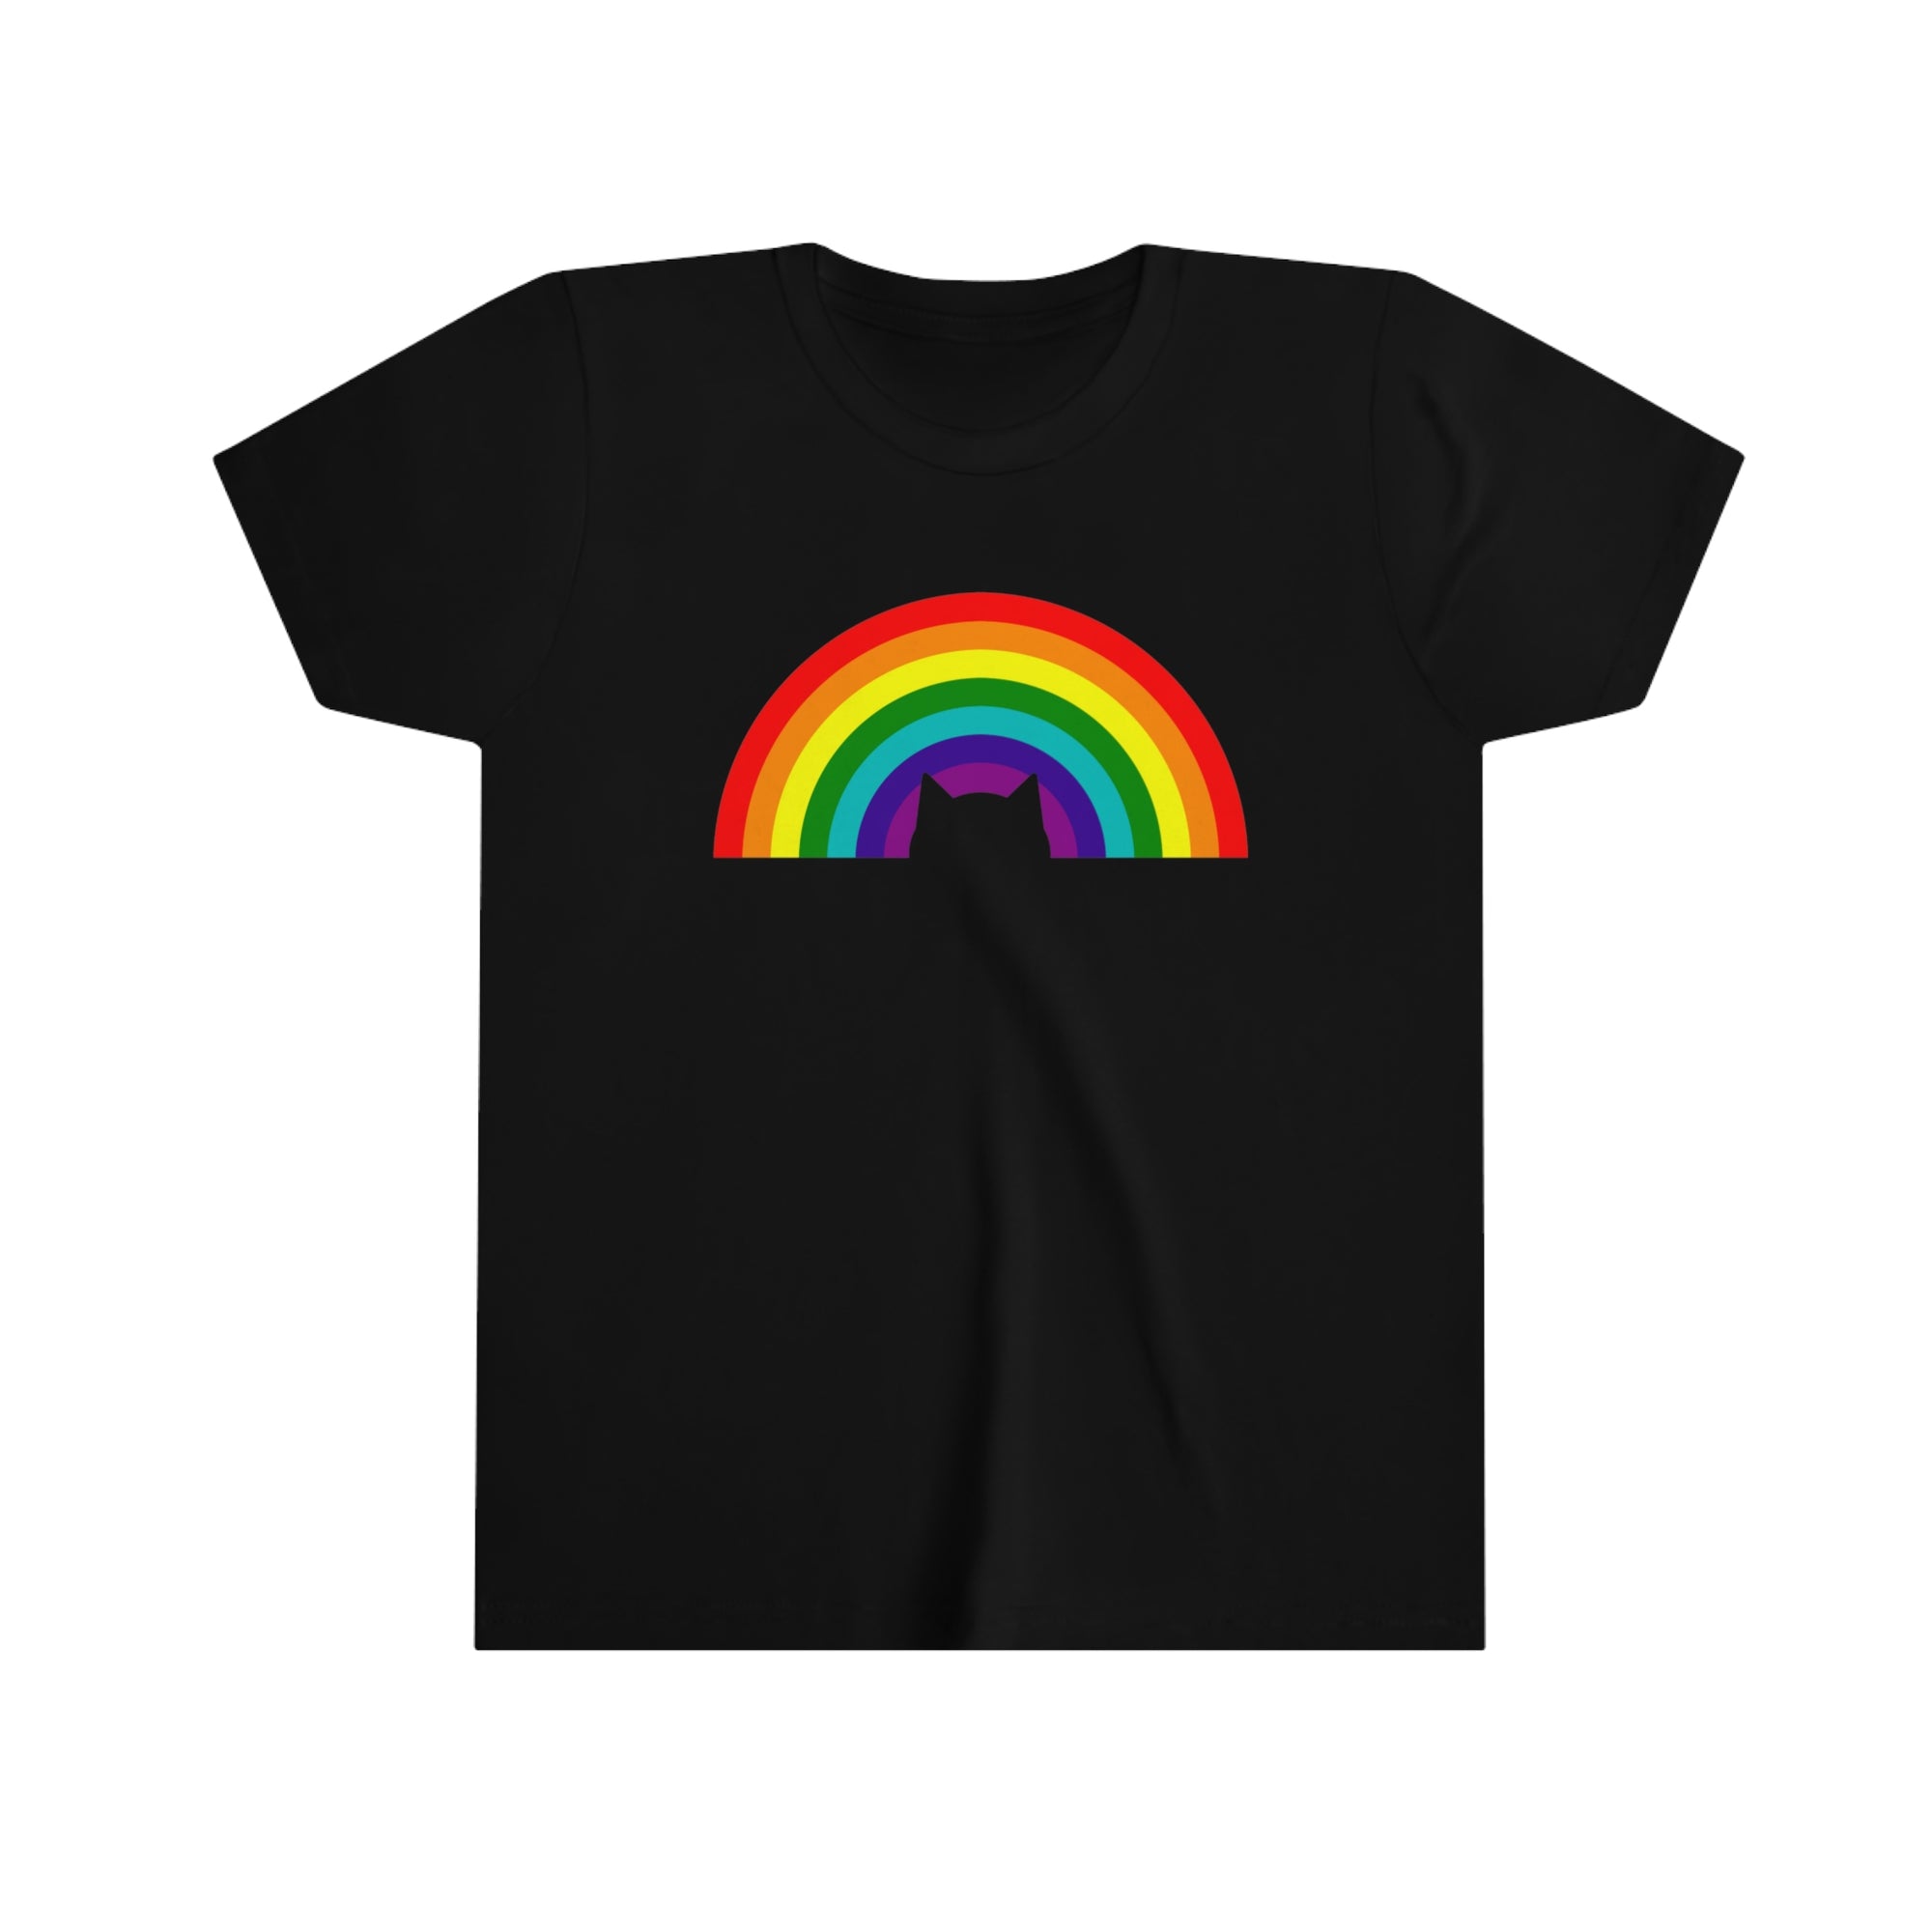 Rainbow Cat - Youth T-Shirt